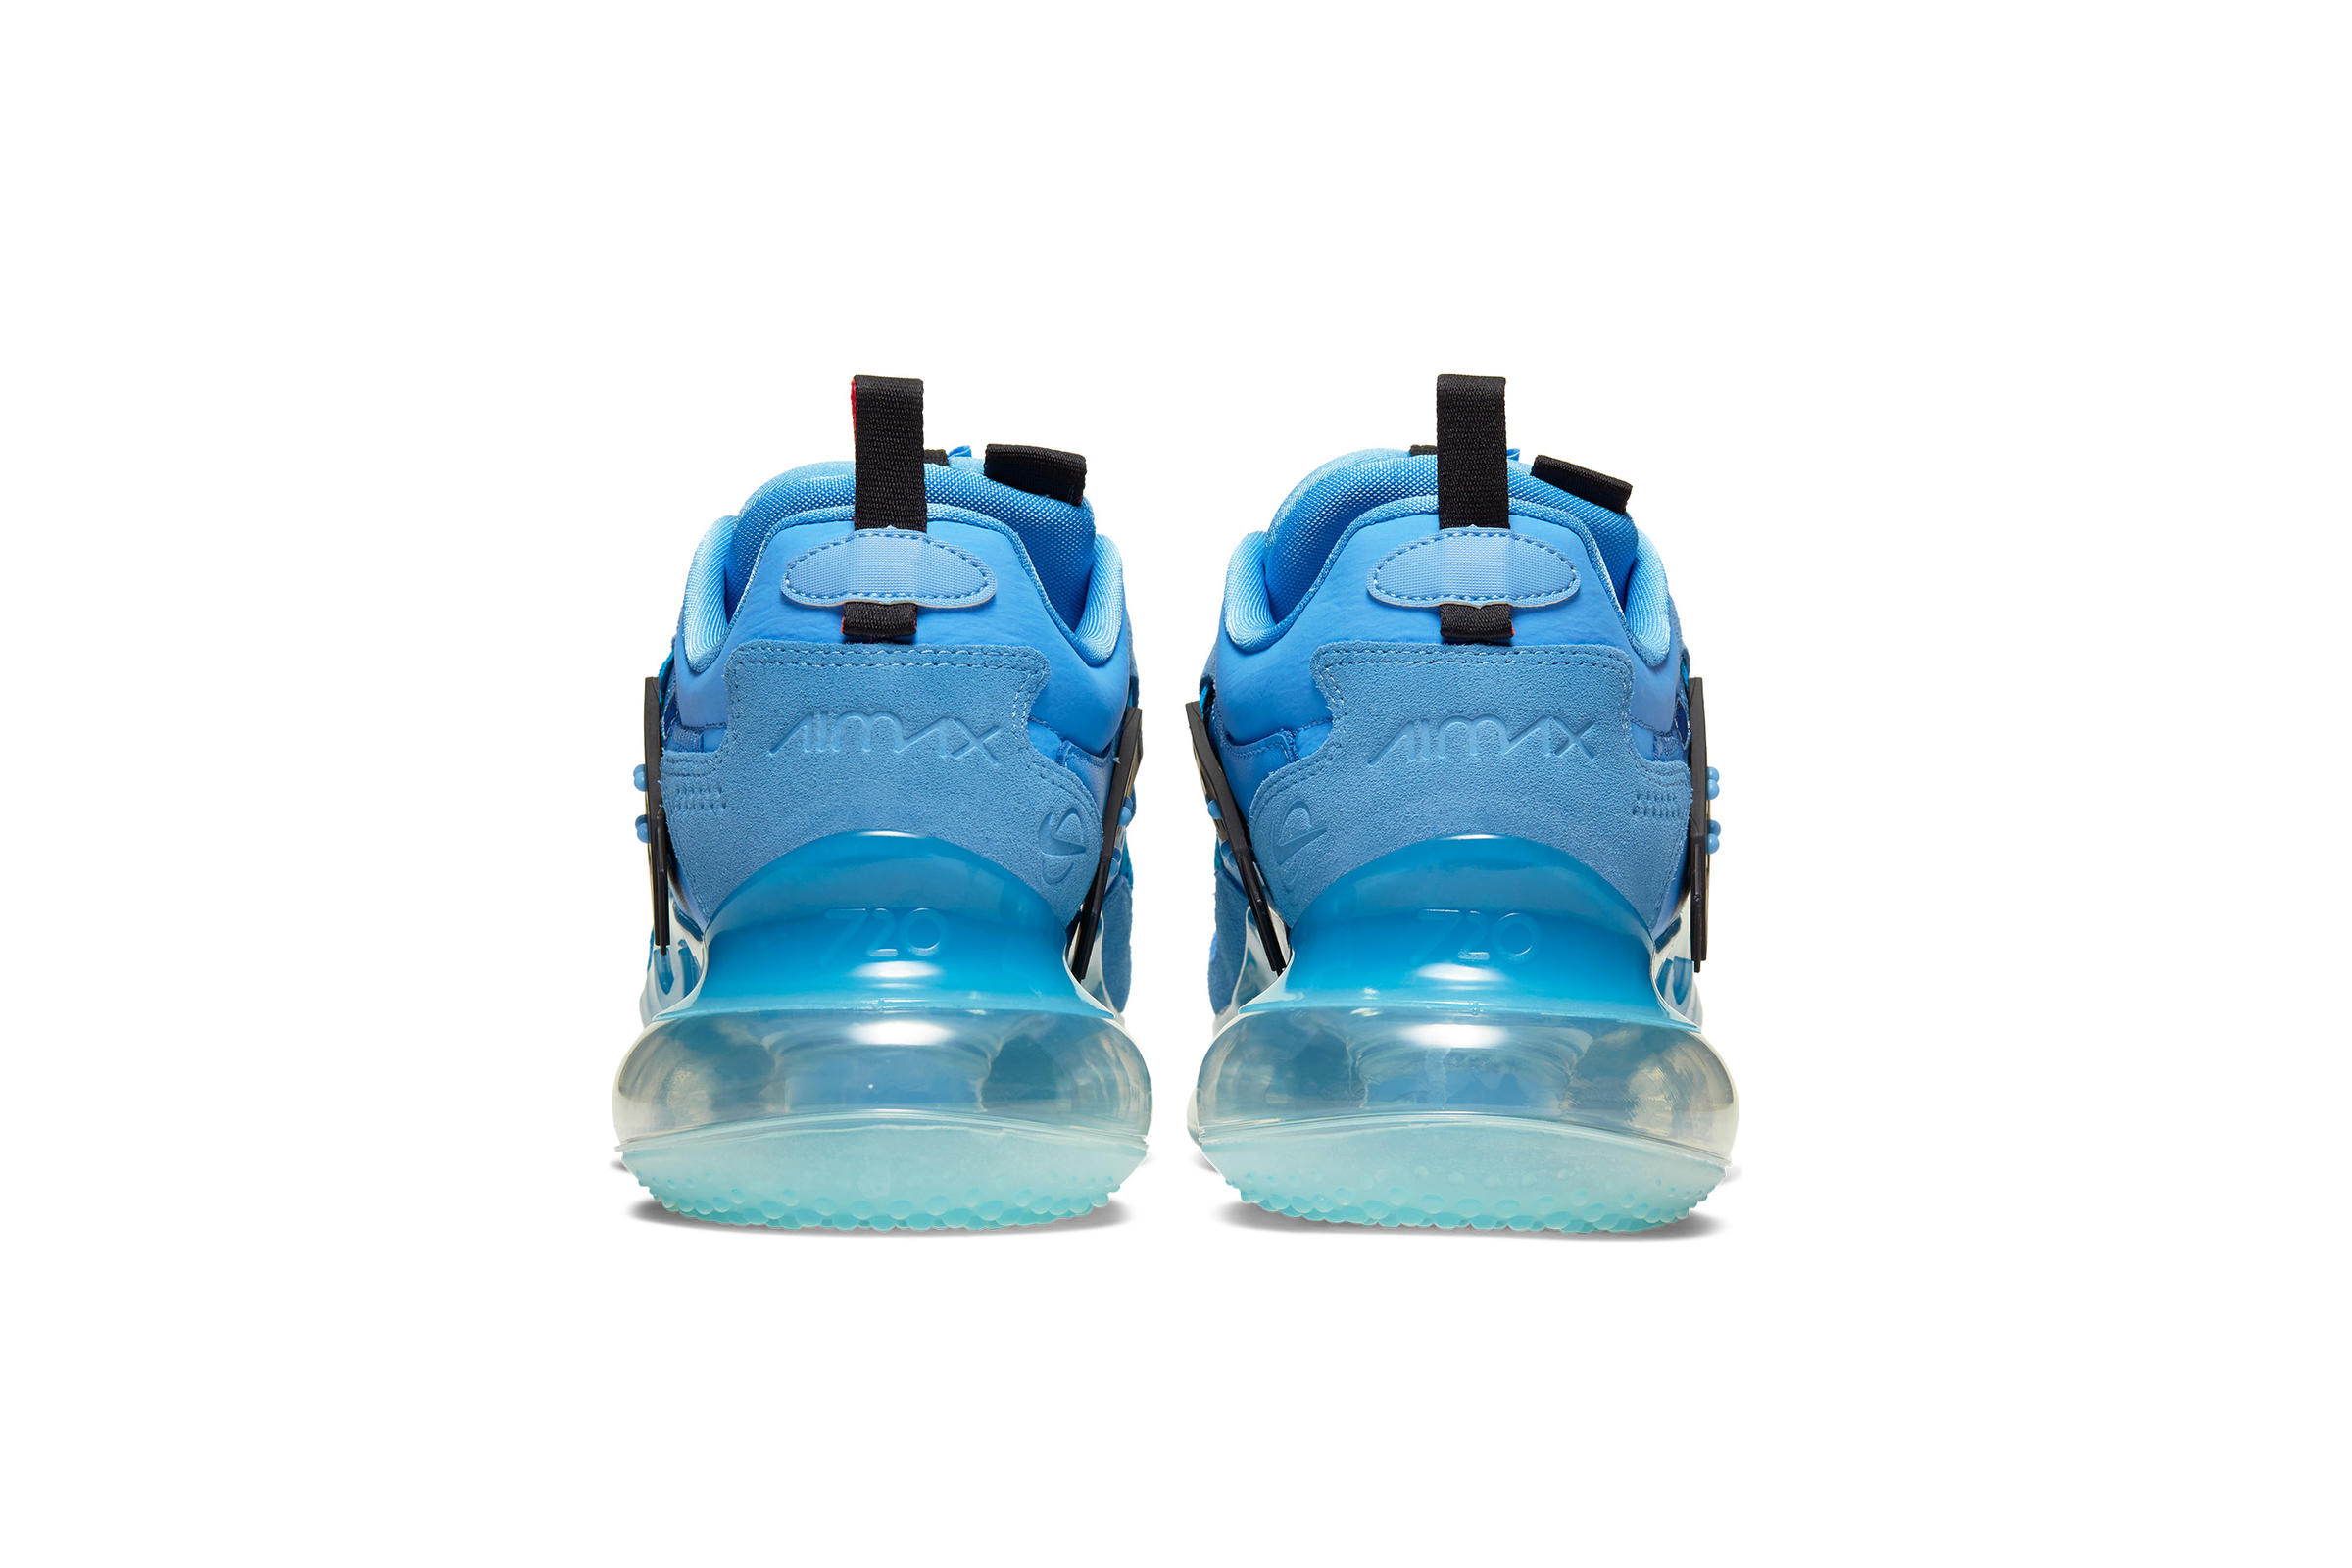 Nike AIR MAX 720 OBJ SLIP "UNIVERSITY BLUE"